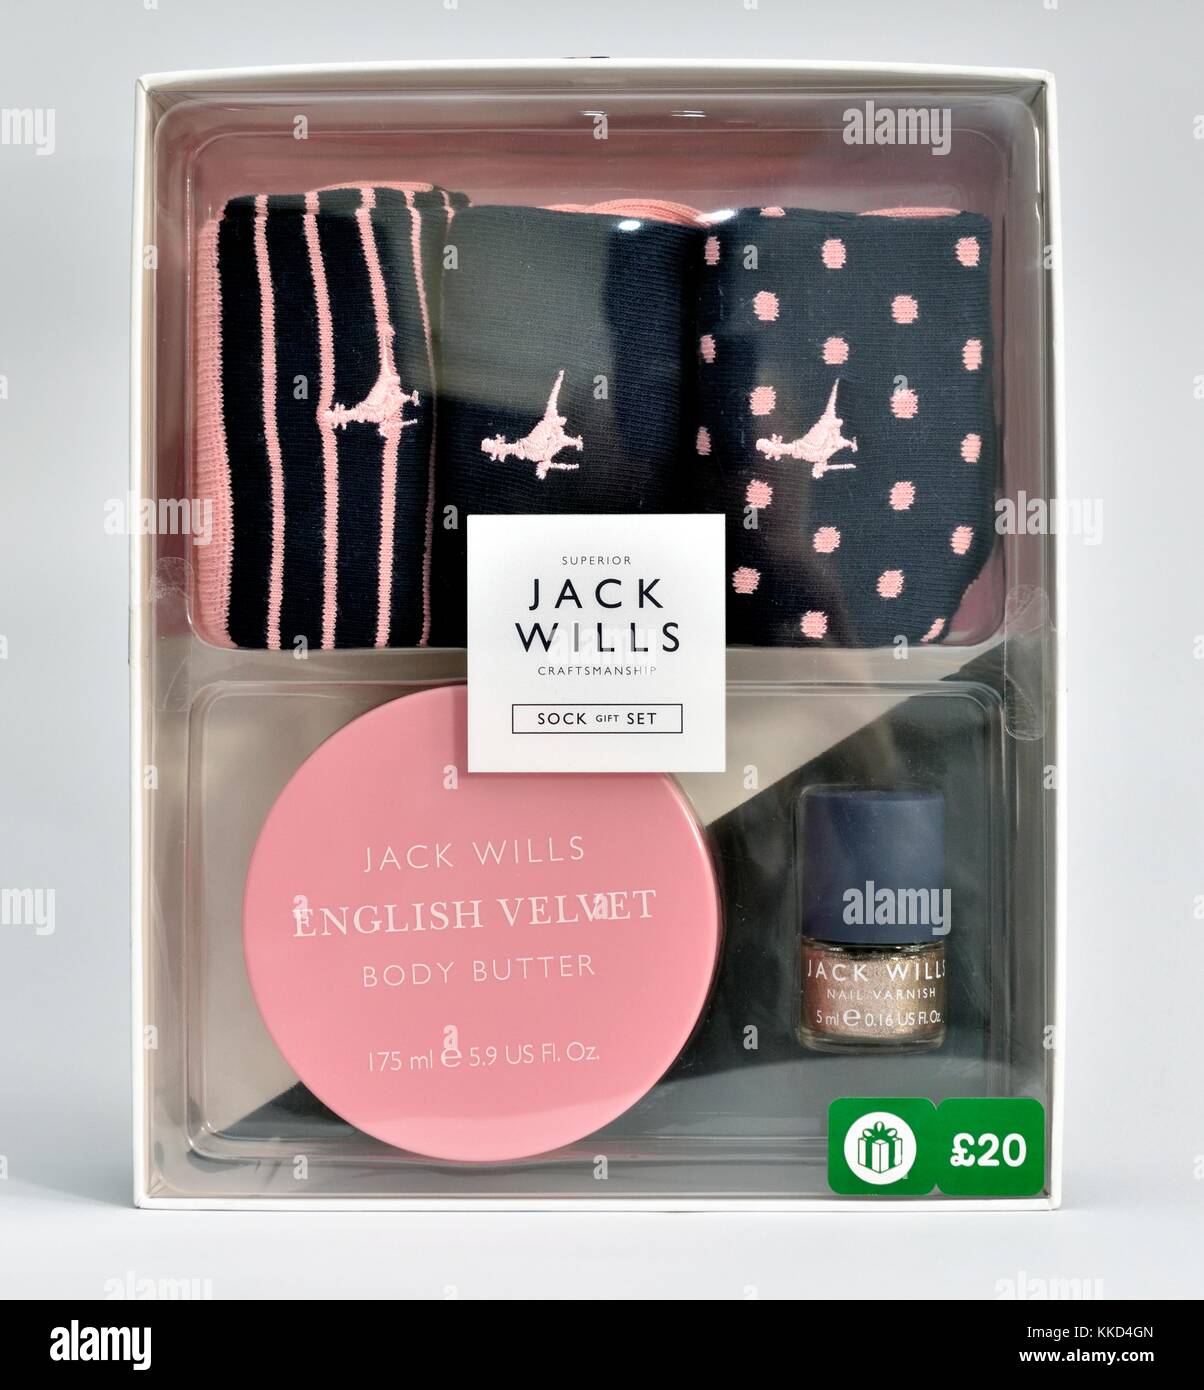 Jack wills gift box Stock Photo